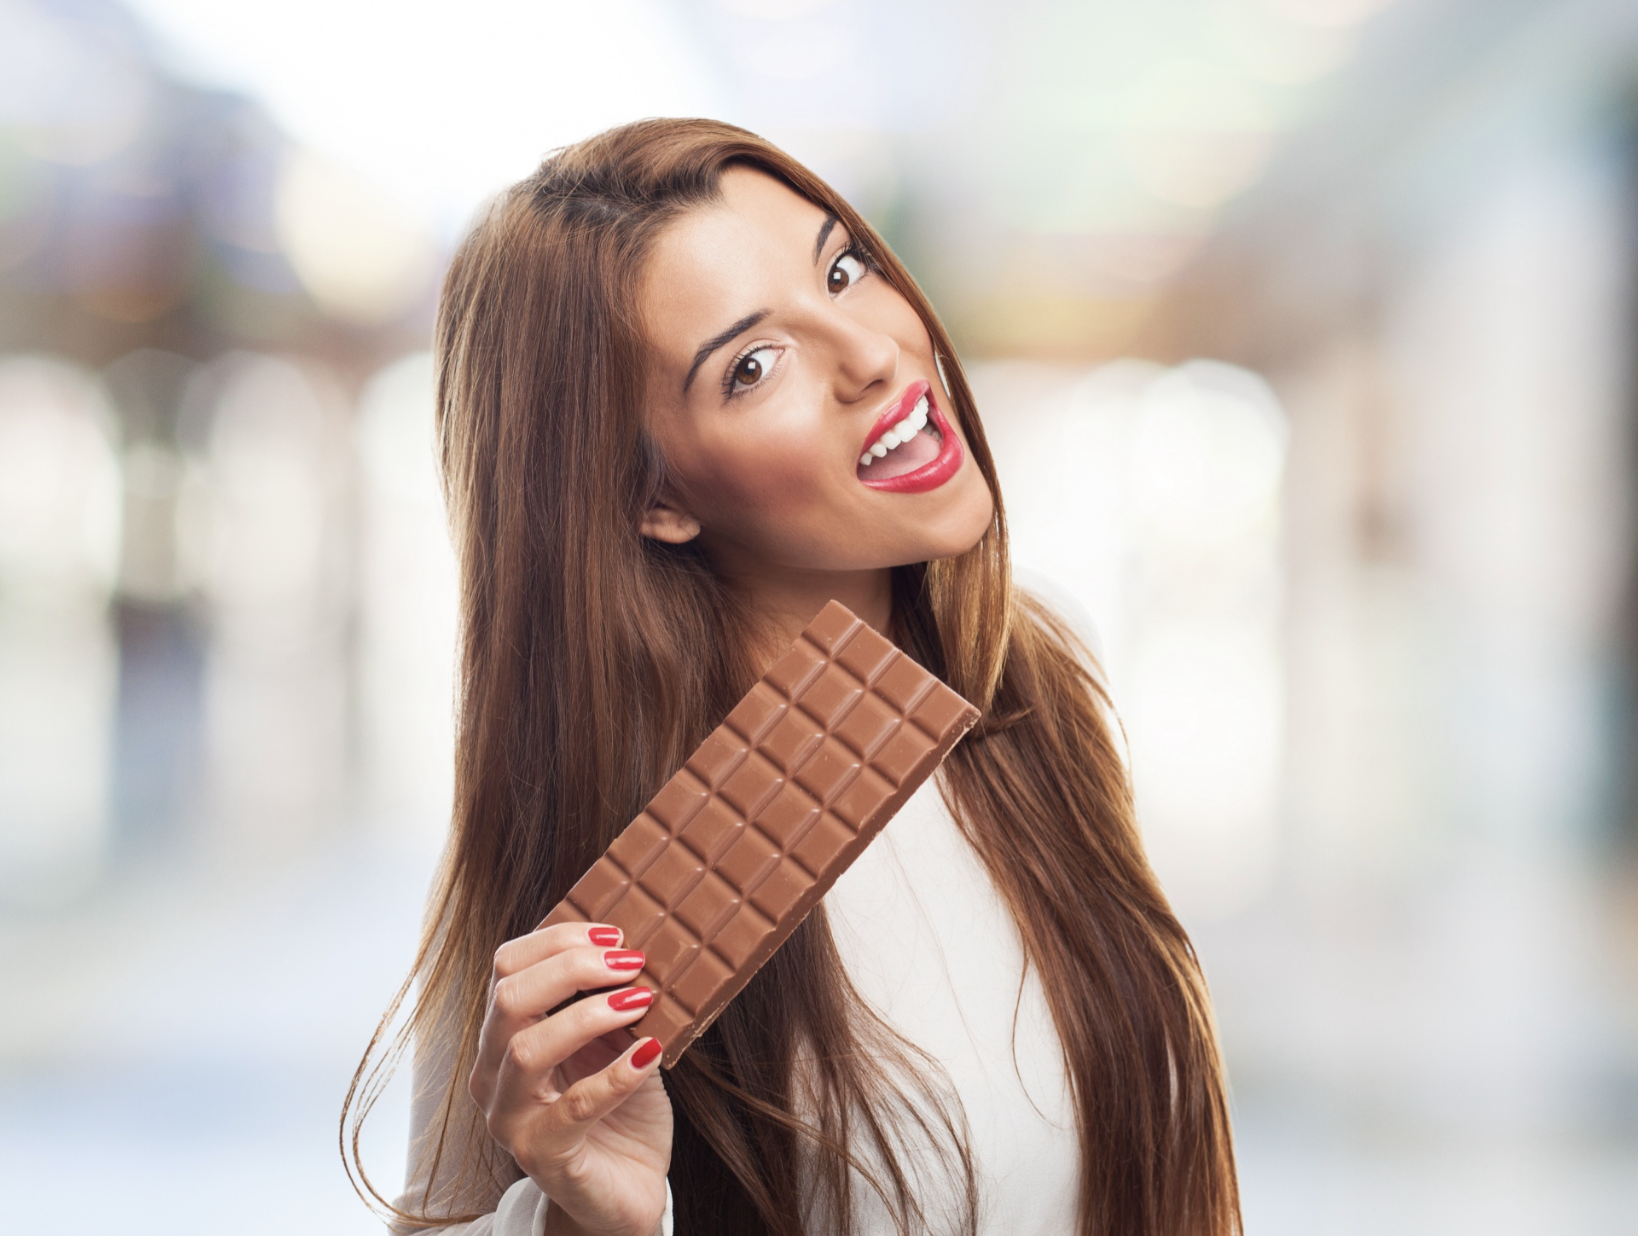 Páscoa saudável: aproveite o prazer do chocolate com consciência e bem-estar / GB Imagem